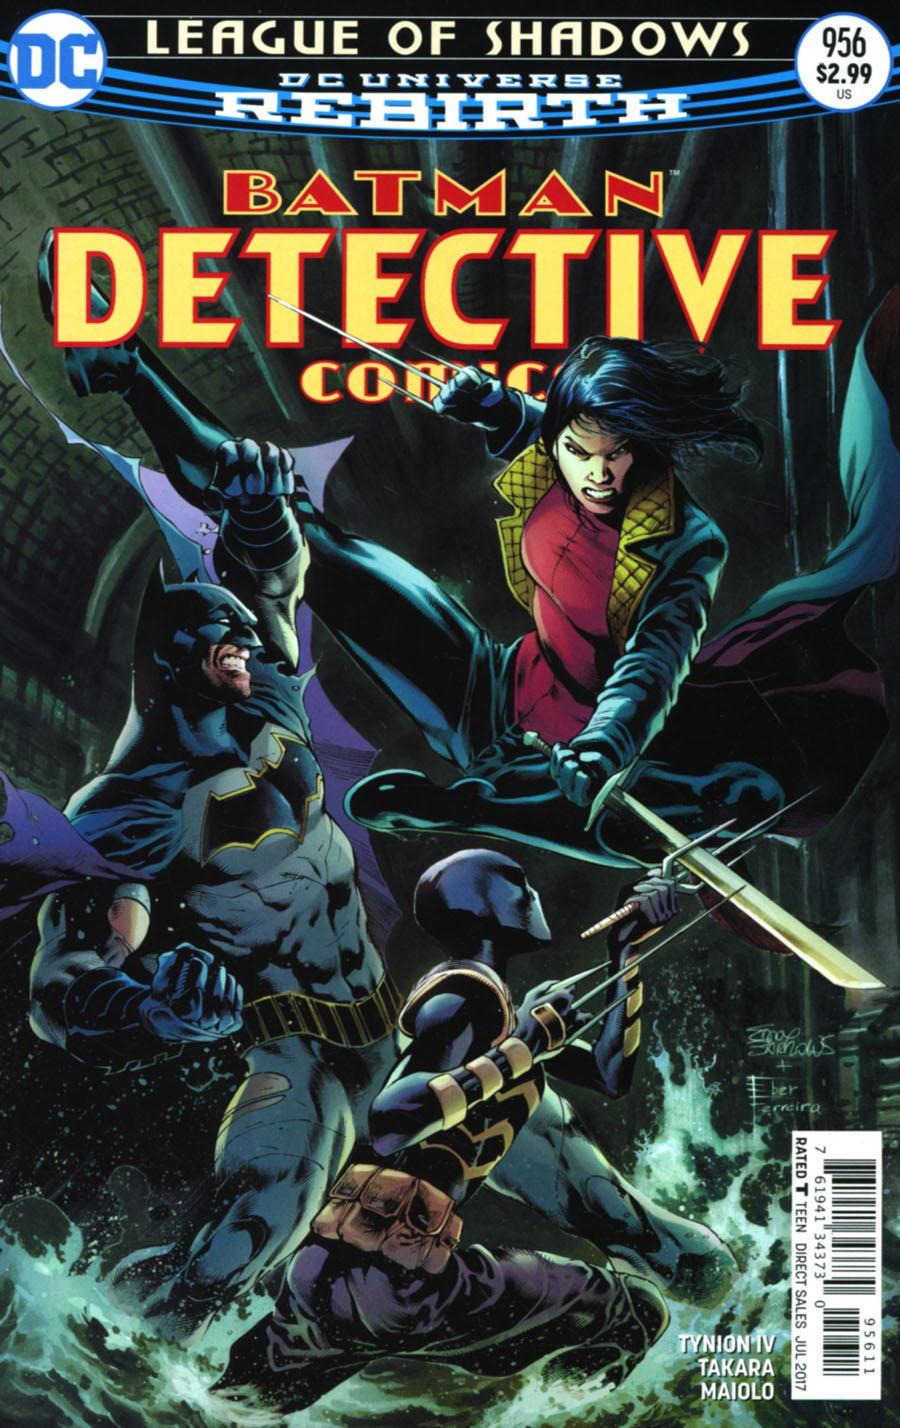 Detective Comics Vol. 2 #956